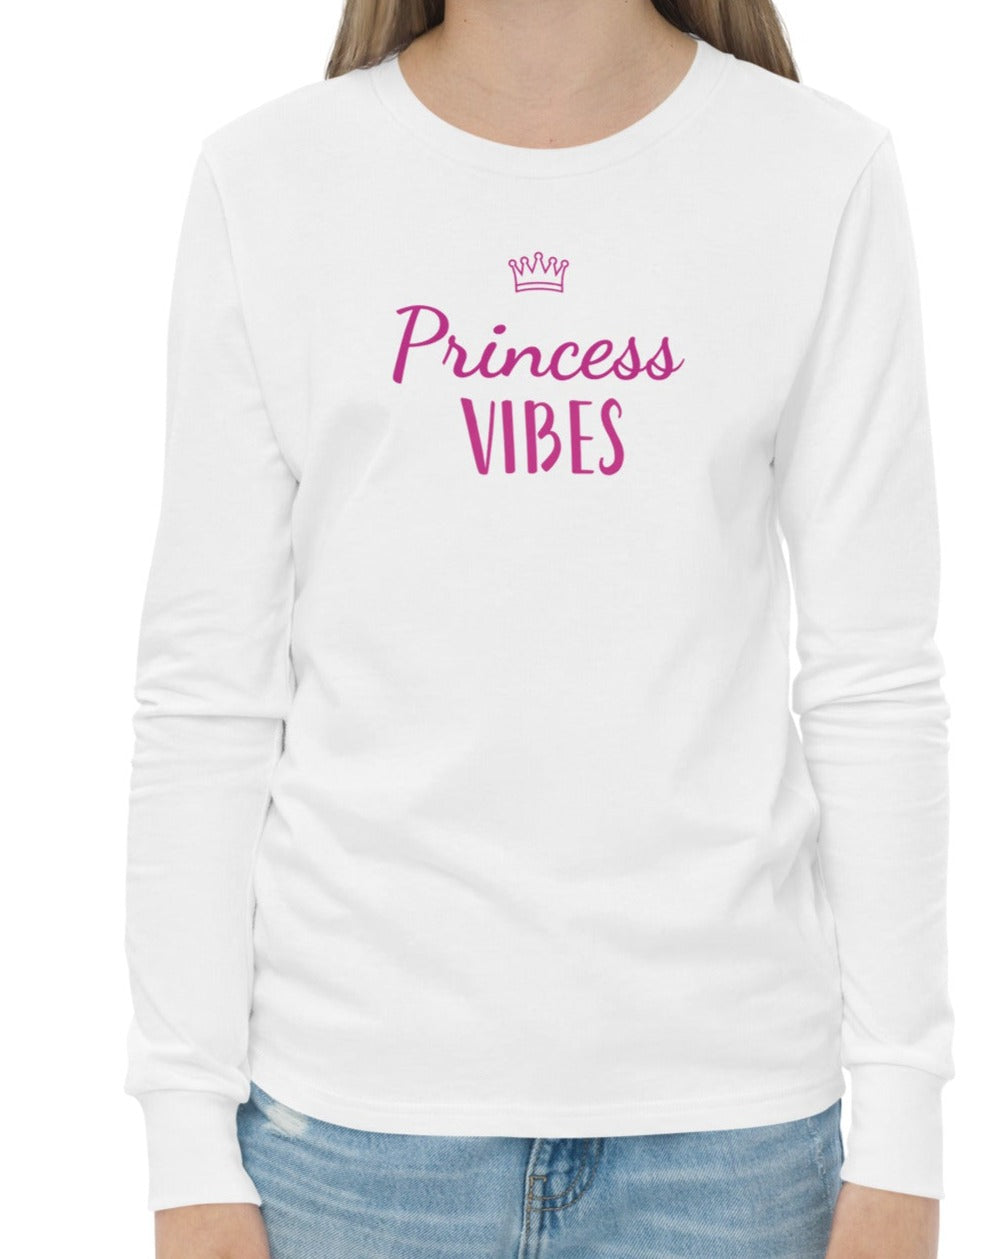 Princess Vibes Cotton Tee - On the Go with Princess O